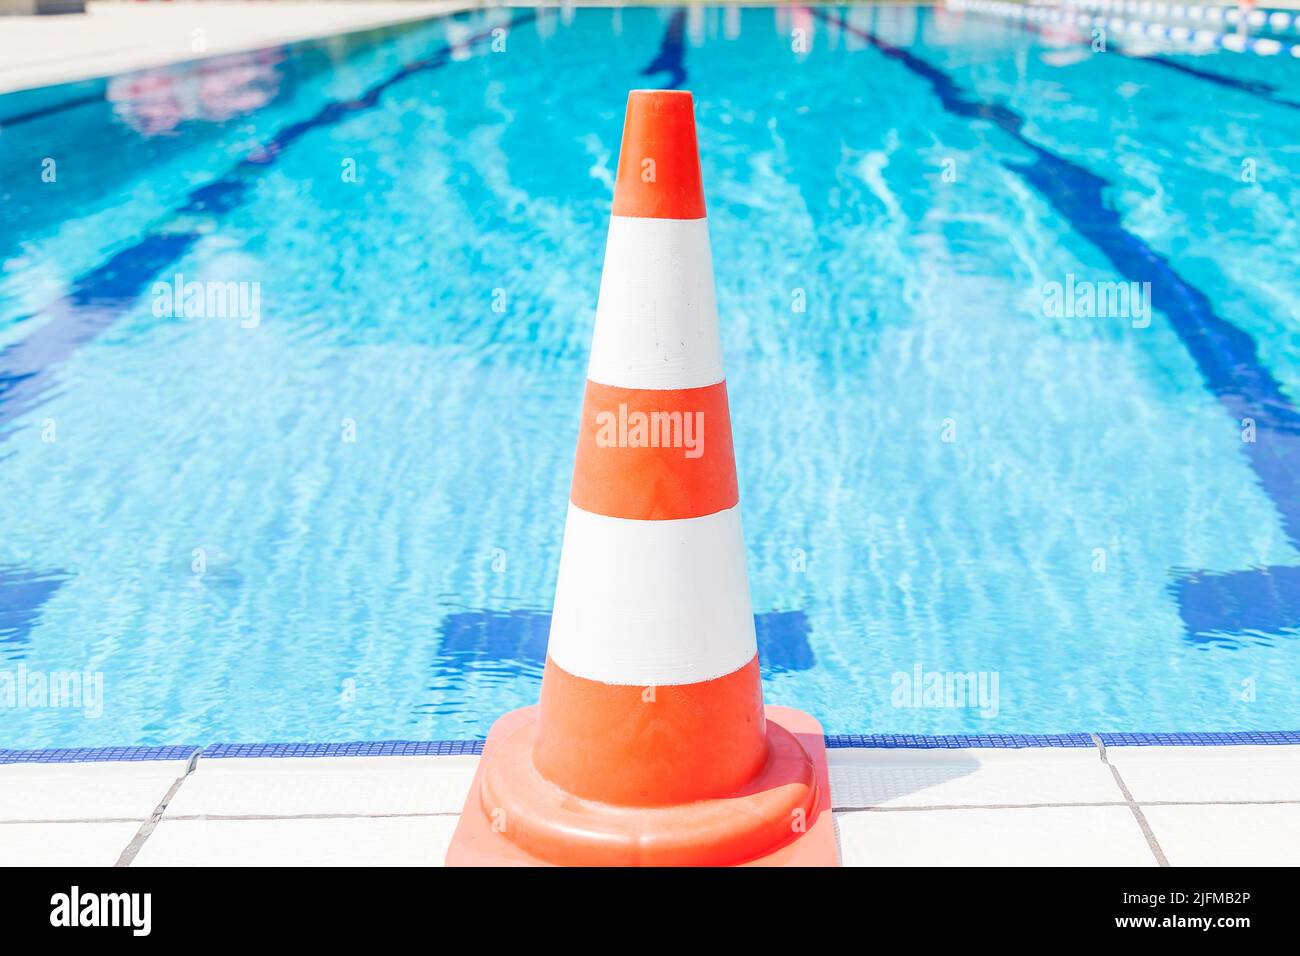 Schwimmbad-Reparatur - Sicherheit-Kegel am Rand Stockfoto